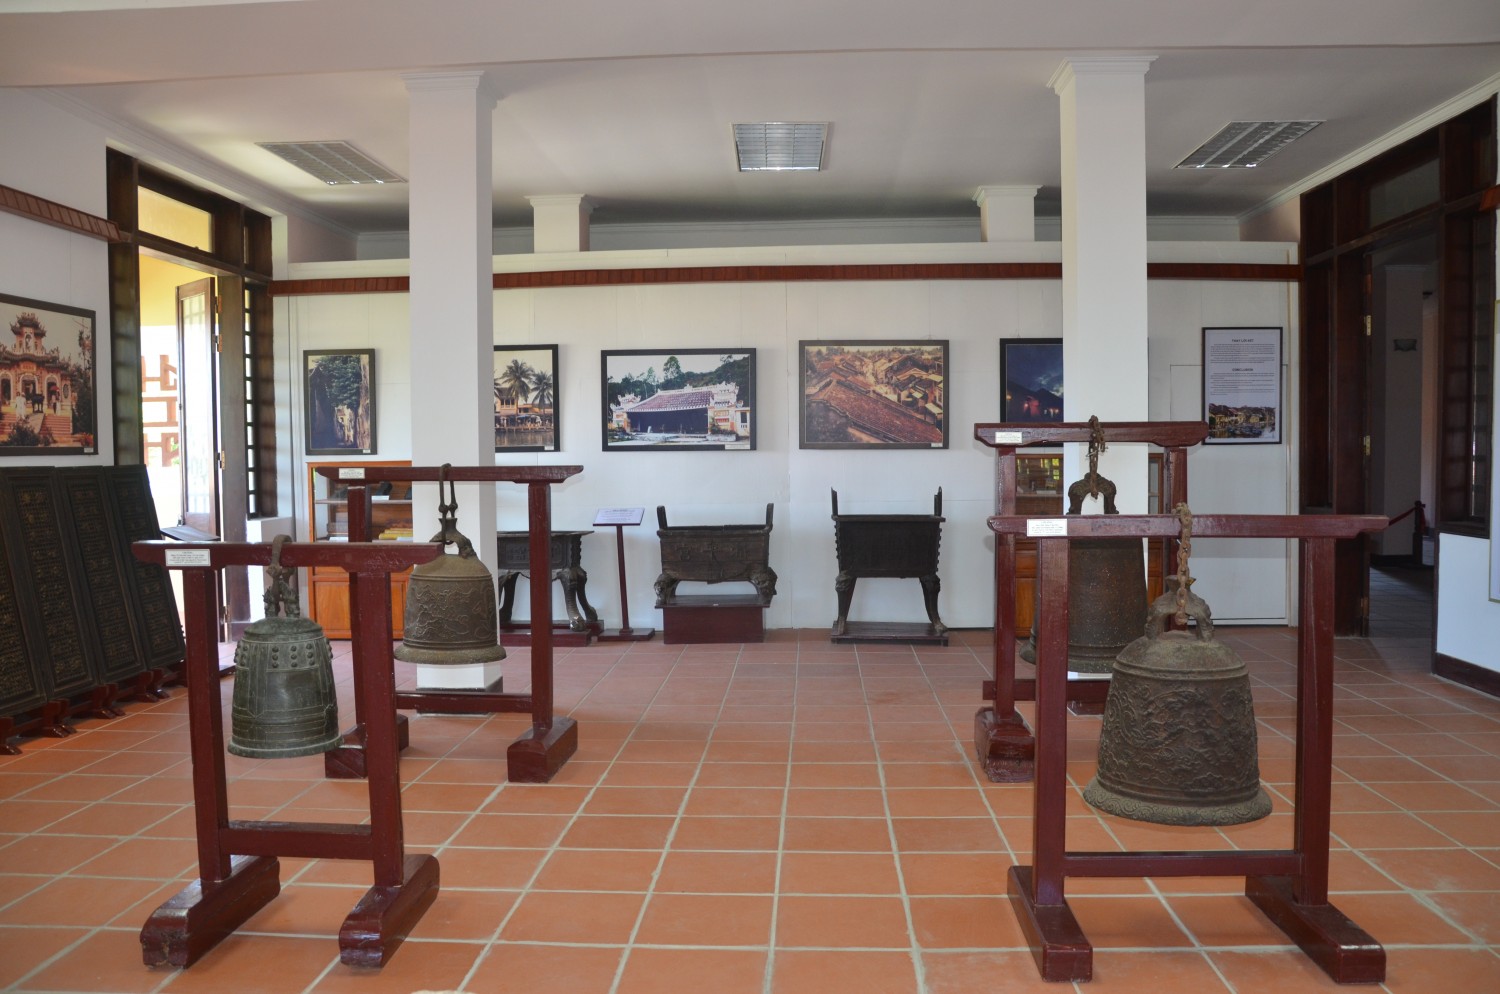 Bảo tàng lịch sử văn hóa Hội An - Minh chứng sống động của thương cảng phồn thịnh một thời 17